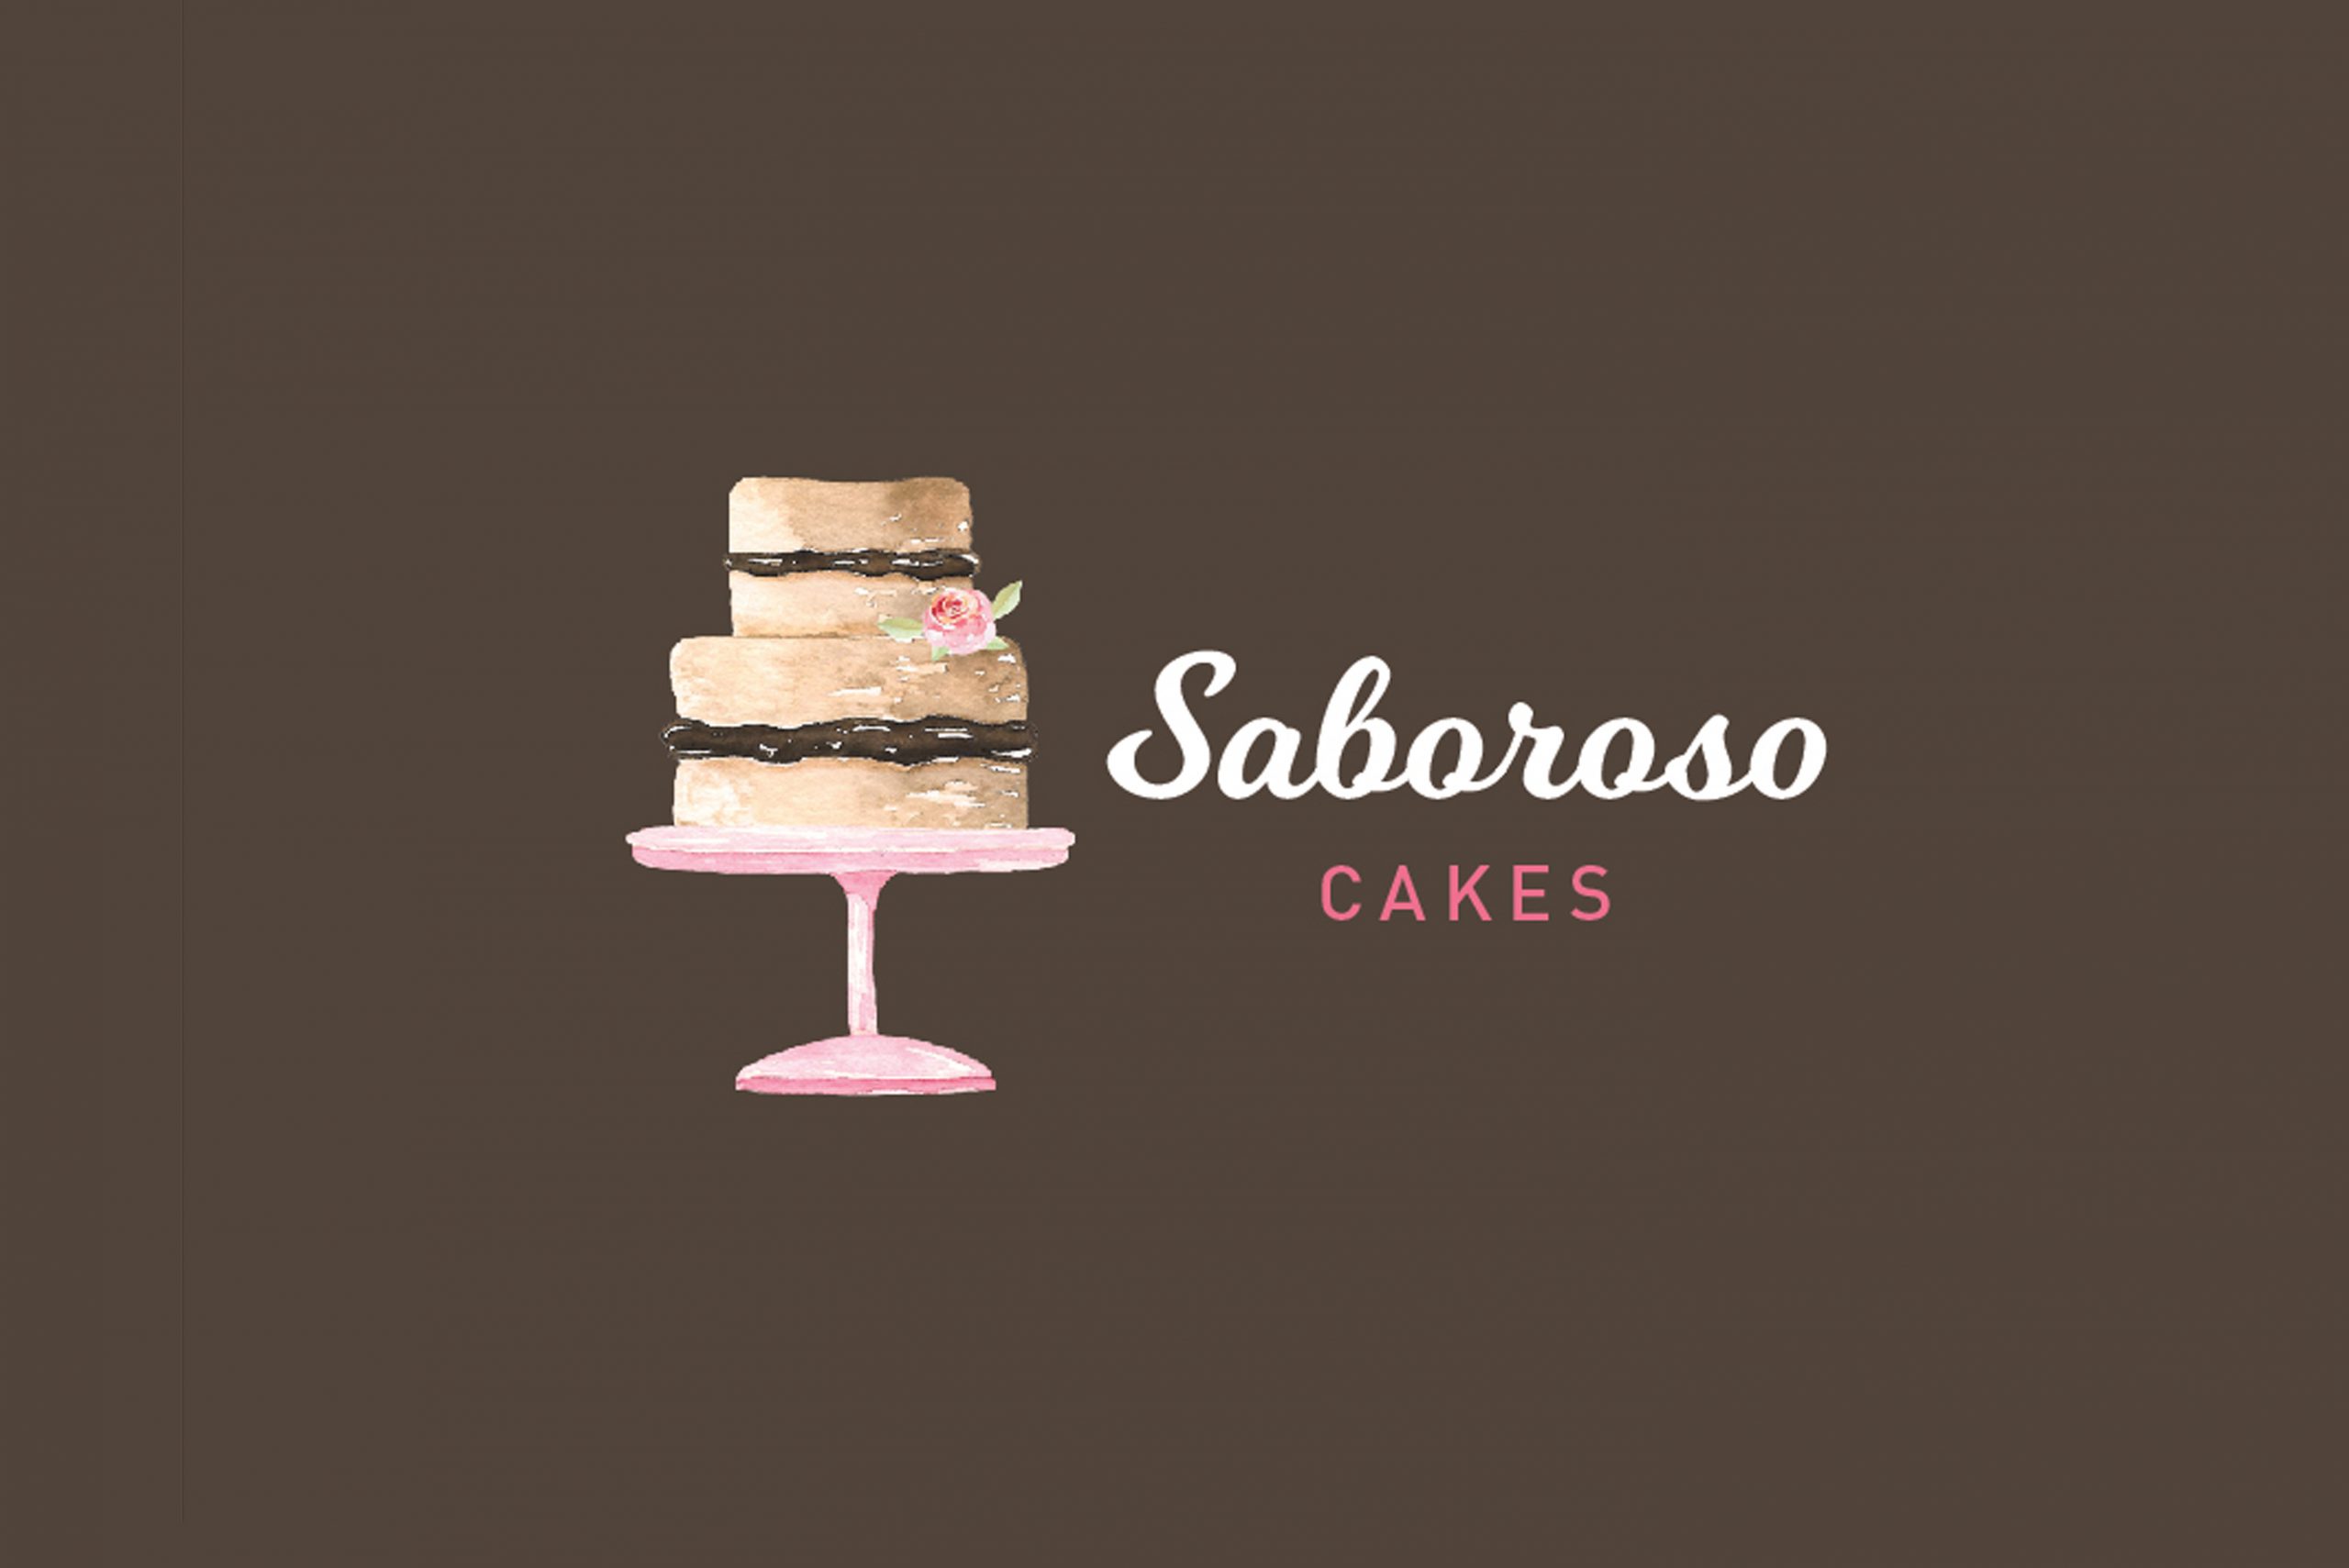 Sobroso Cakes